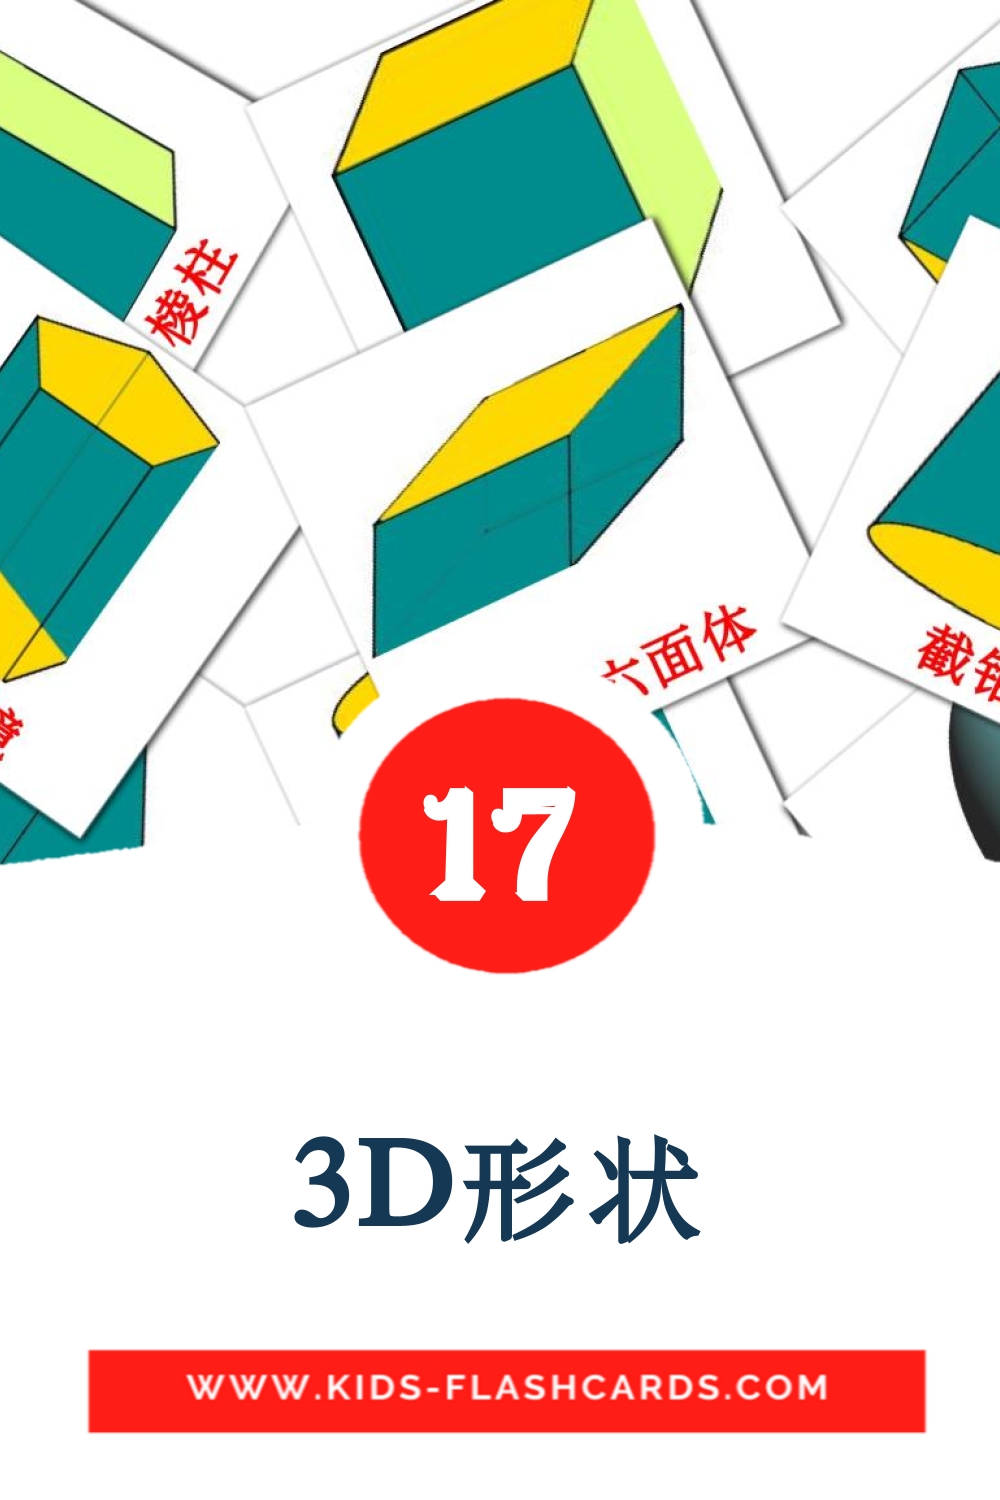 3D形状 на китайский(Упрощенный) для Детского Сада (17 карточек)